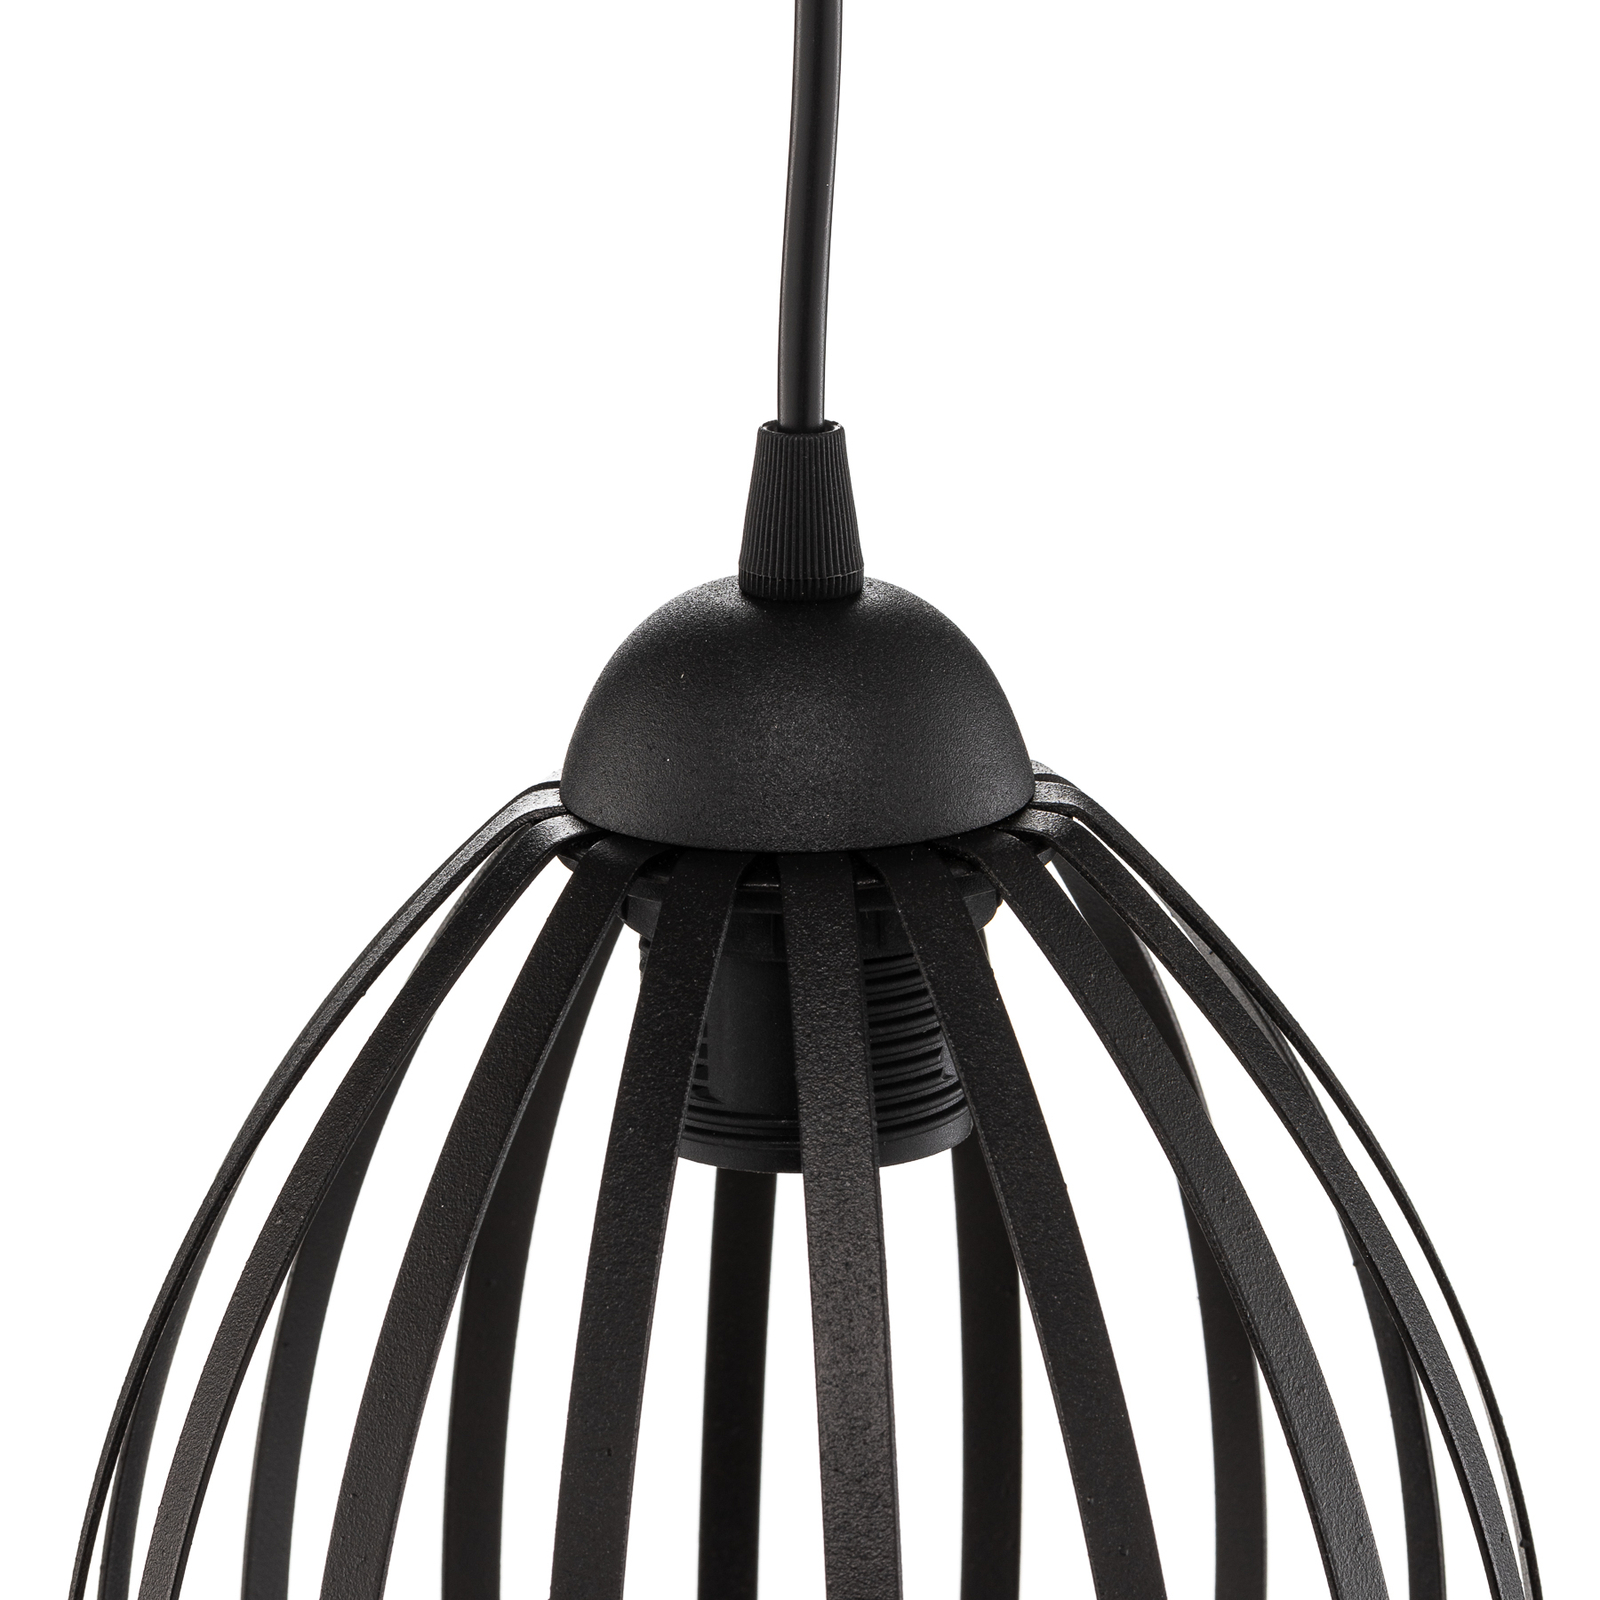 Dali pendant light in black, 1-bulb